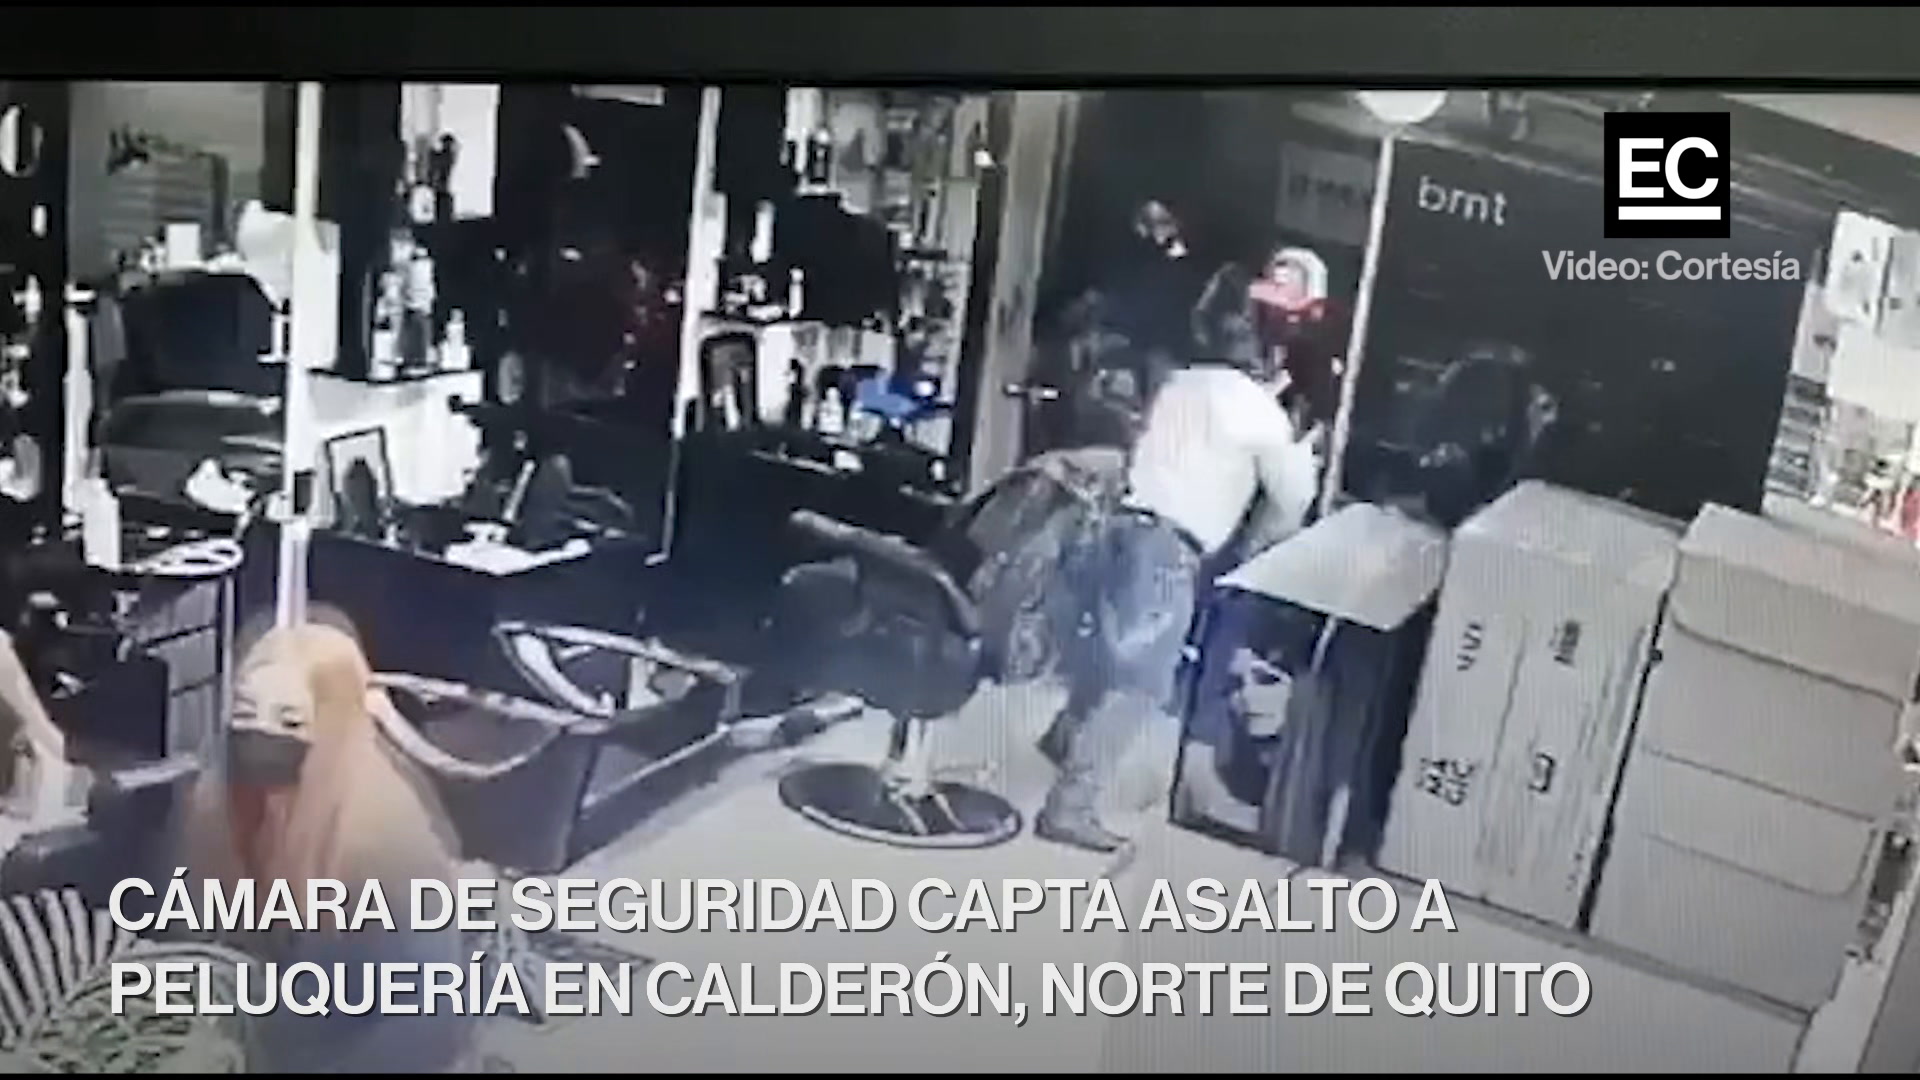 Tres delincuentes ingresaron el pasado 25 de junio del 2021 a una peluquería en el barrio San José de Morán de Calderón, extremo norte de Quito, para asaltar. Captura video